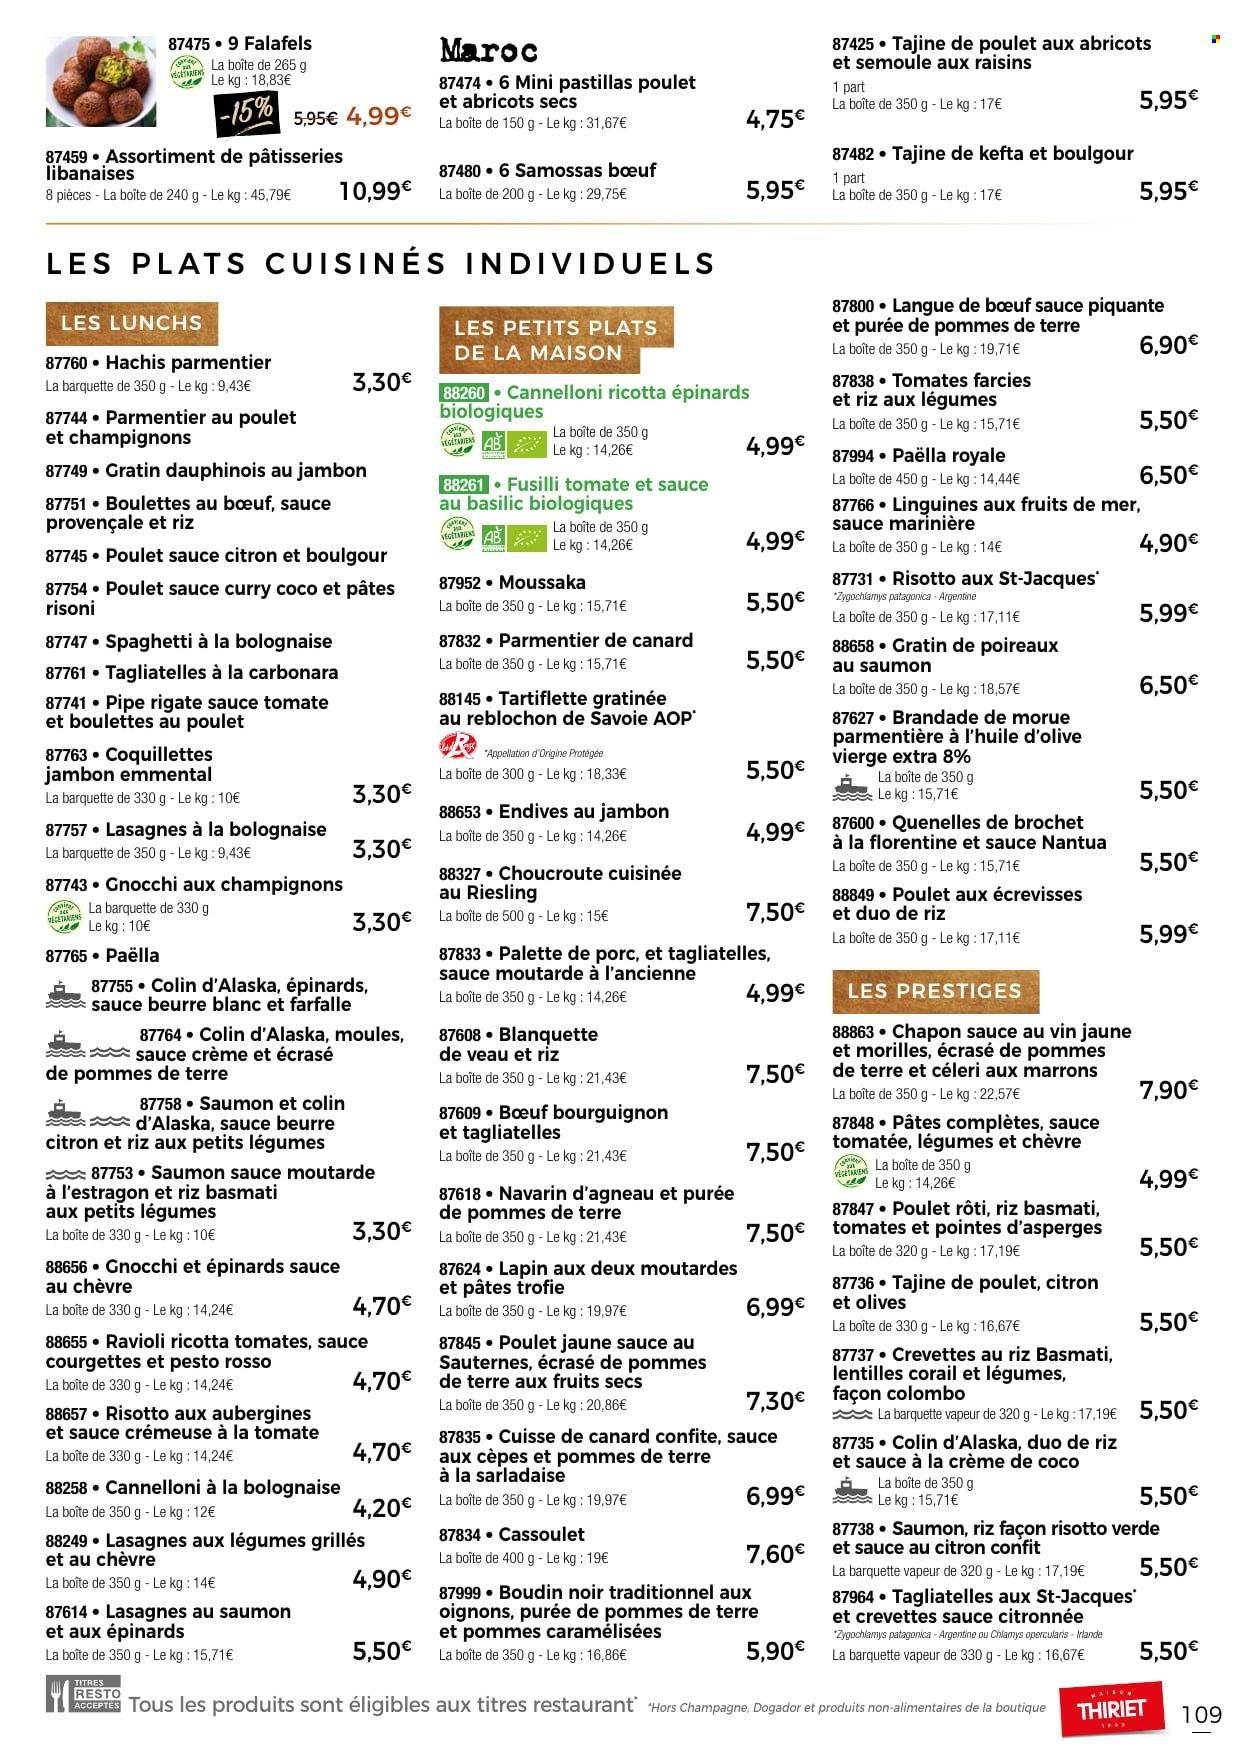 thumbnail - Catalogue Thiriet - 24/11/2022 - 31/12/2022 - Produits soldés - palette de porc, alcool, courgette, marrons, hachis parmentier, cuisse de canard, langue de bœuf, boulettes de bœuf, brochet, moules, gnocchi, tomate farcie, lentilles, lasagnes, paella, ravioli, plat cuisiné, tartiflette, brandade, poulet rôti, gratins de pommes, ecrasé de pommes, boudin de viande, boudin noir, lait de coco, tagliatelles, farfalle, moutarde, moutarde à l’ancienne, pesto, huile d'olive vierge extra, huile d'olive, champagne. Page 109.